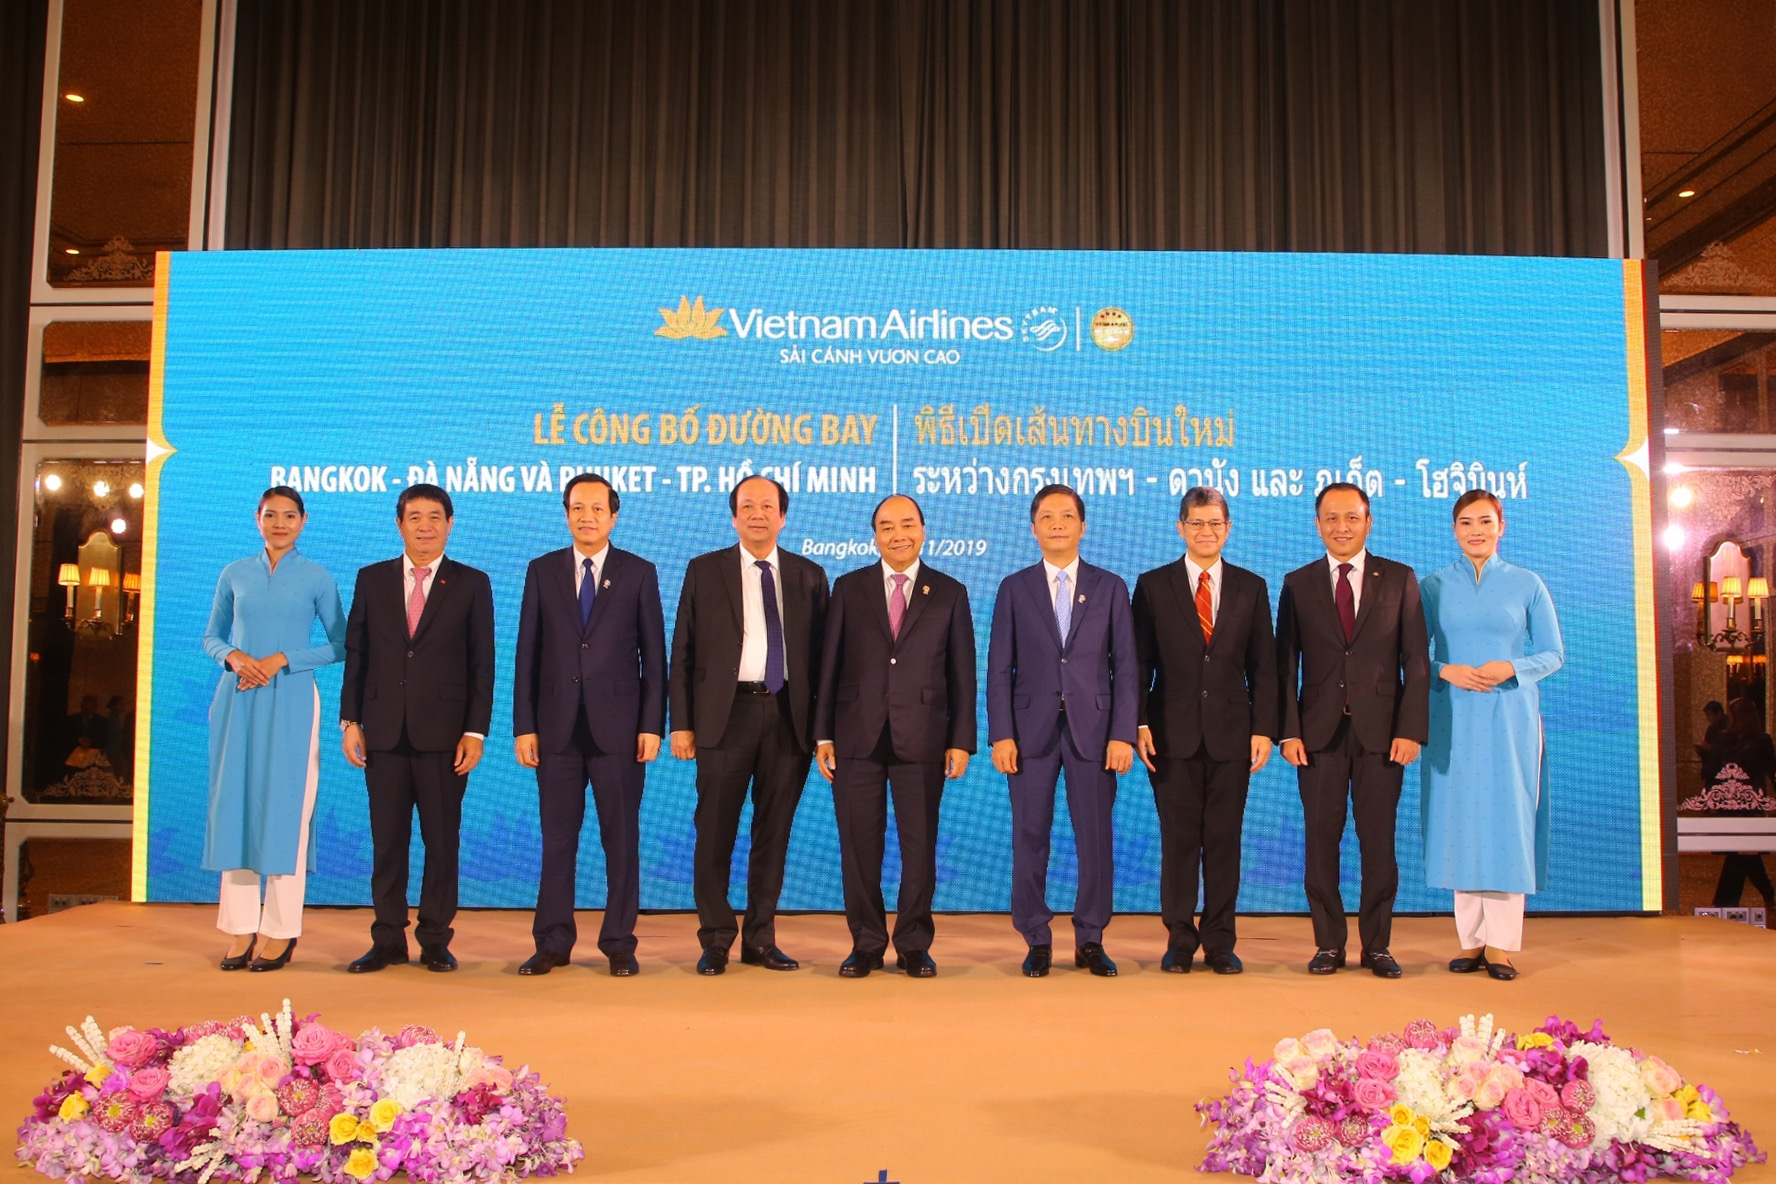  Vietnam Airlines công bố đường bay Bangkok - Đà Nẵng và Phuket - TP.HCM dưới sự chứng kiến của Thủ tướng Chính phủ Nguyễn Xuân Phúc